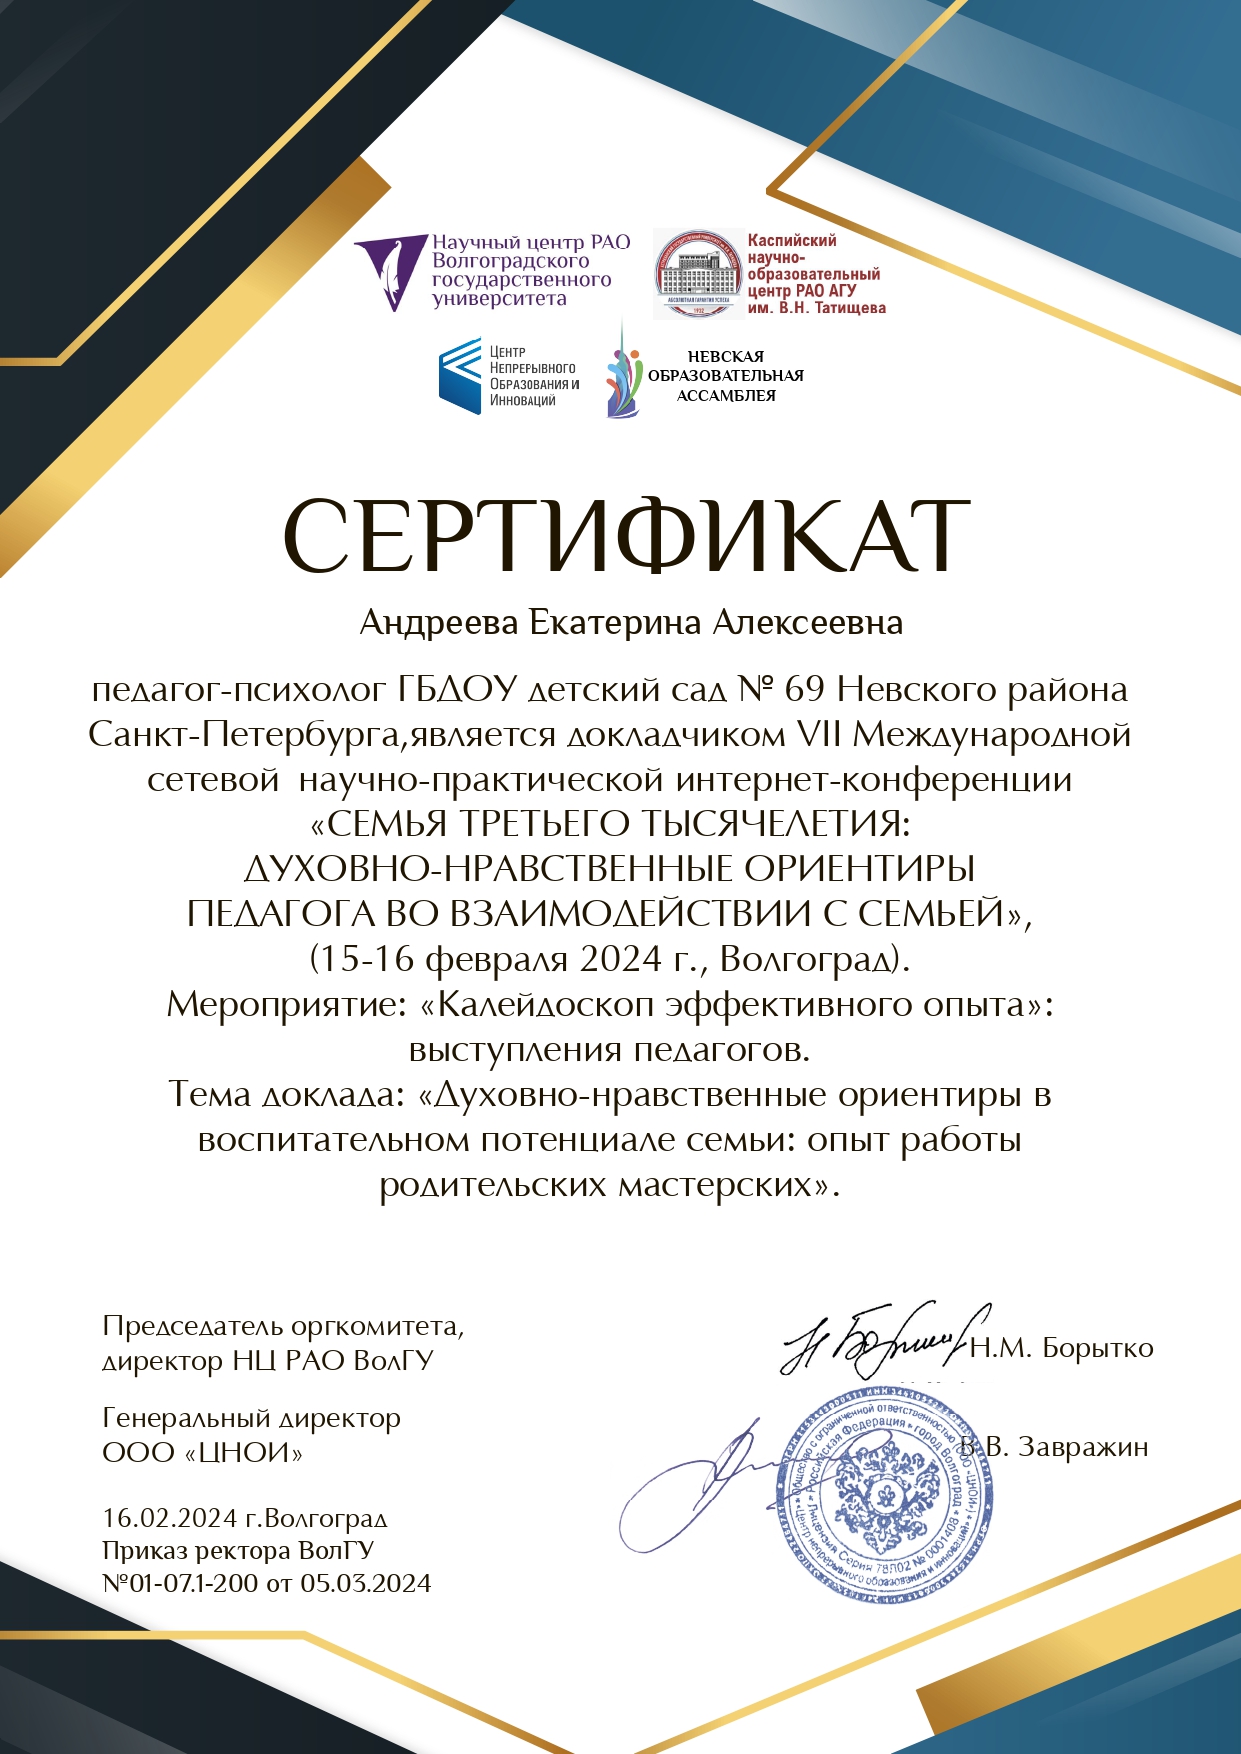 Андреева Екатерина Алексеевна сертификат page 0001